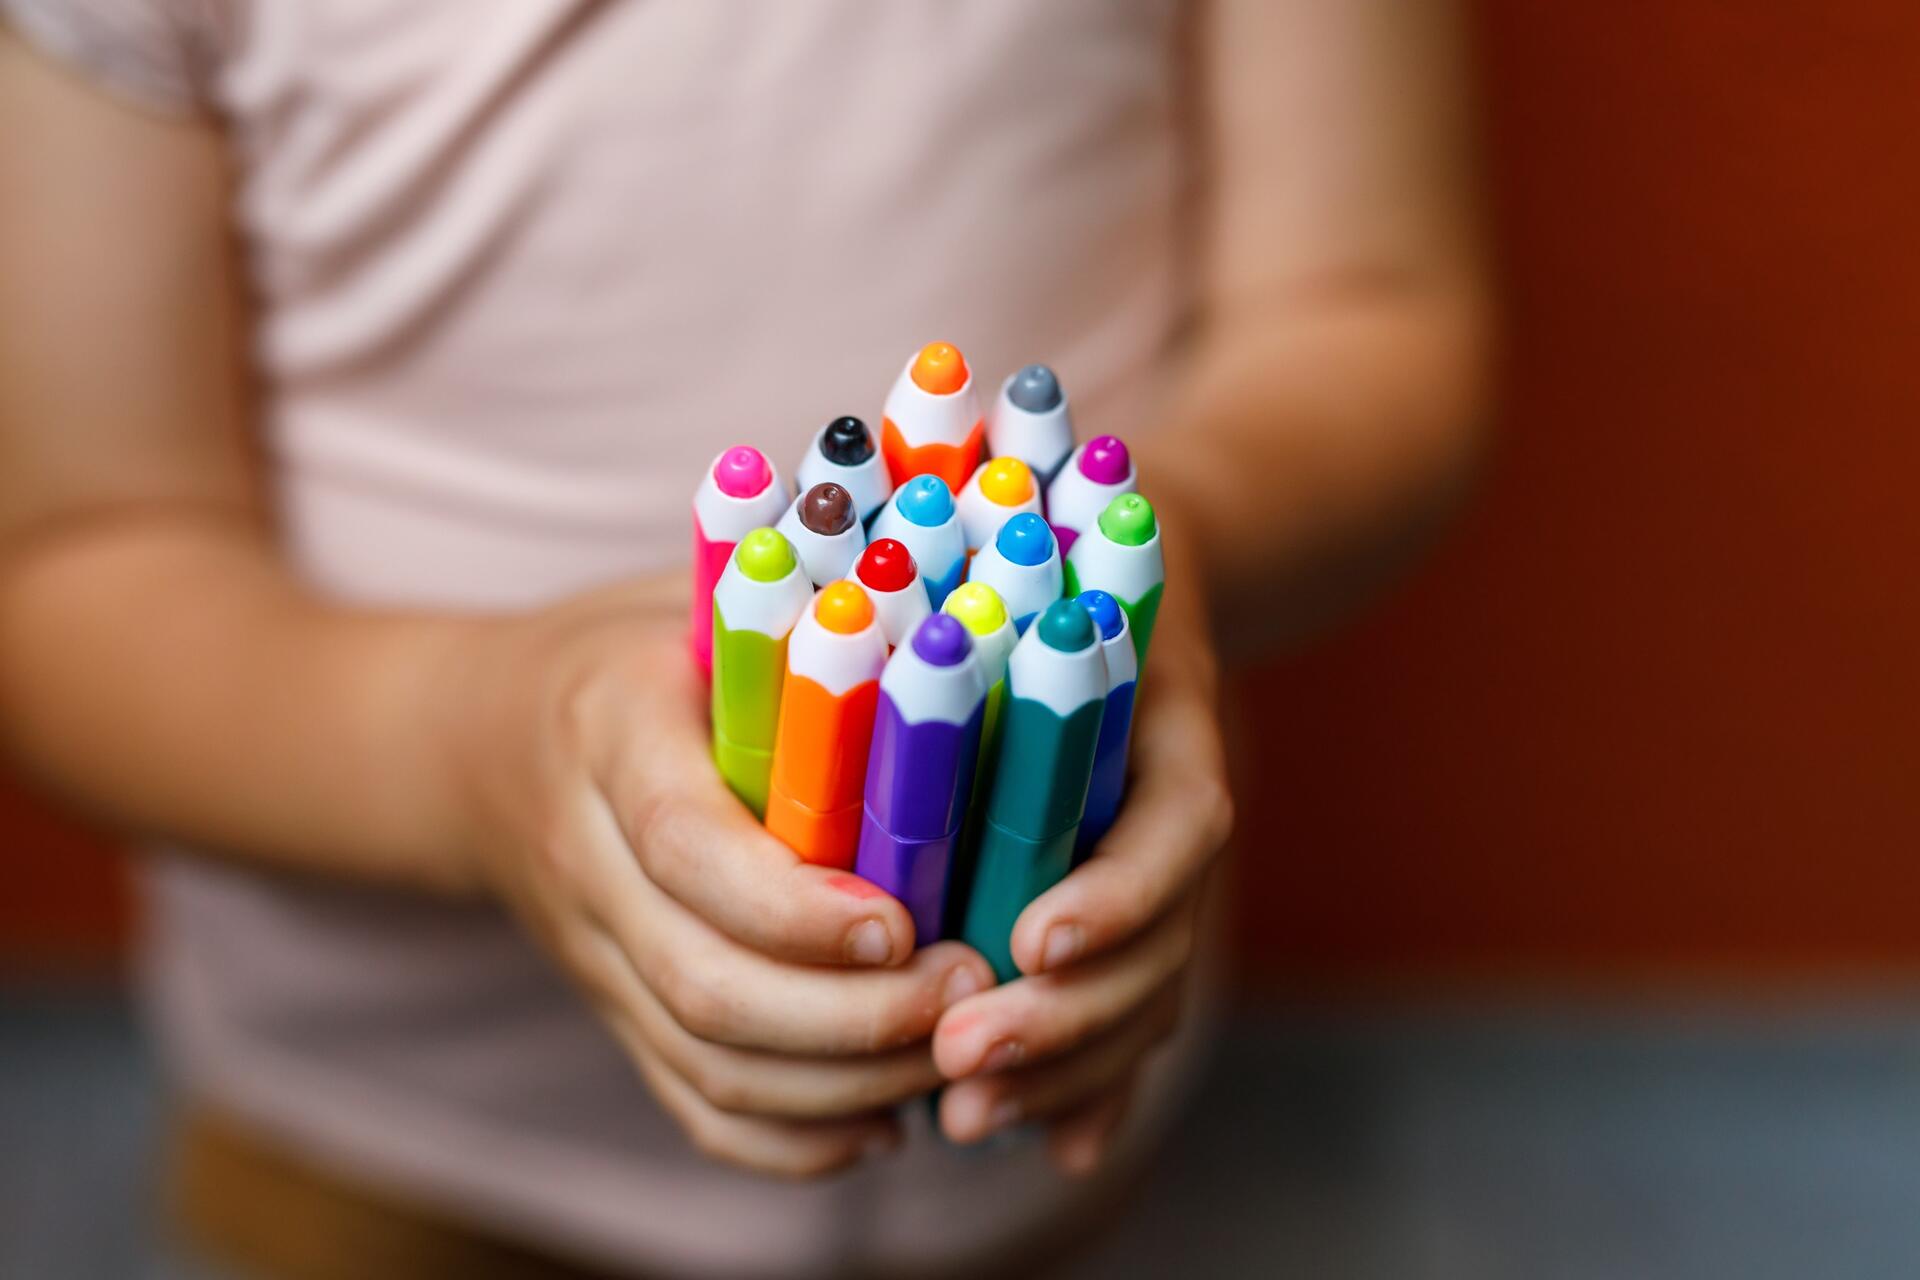 Советы по изучению цвета и их оттенков с детьми 